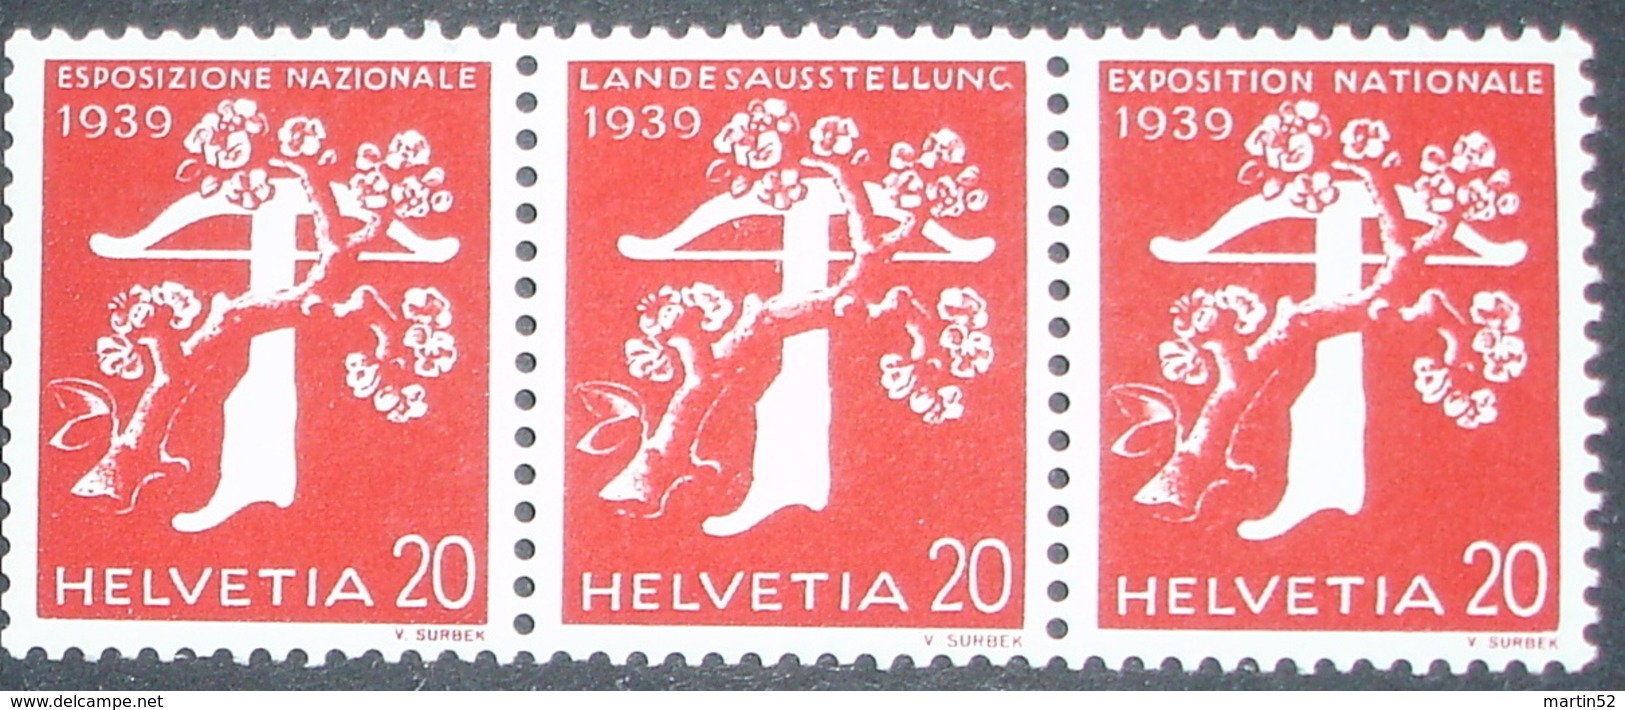 Schweiz Suisse Zusammendruck Se-tenant 1939: Zu Z27c Mi W24 ** MNH Mit Nummer Avec No O1190 (Zu CHF 48.00) - Coil Stamps